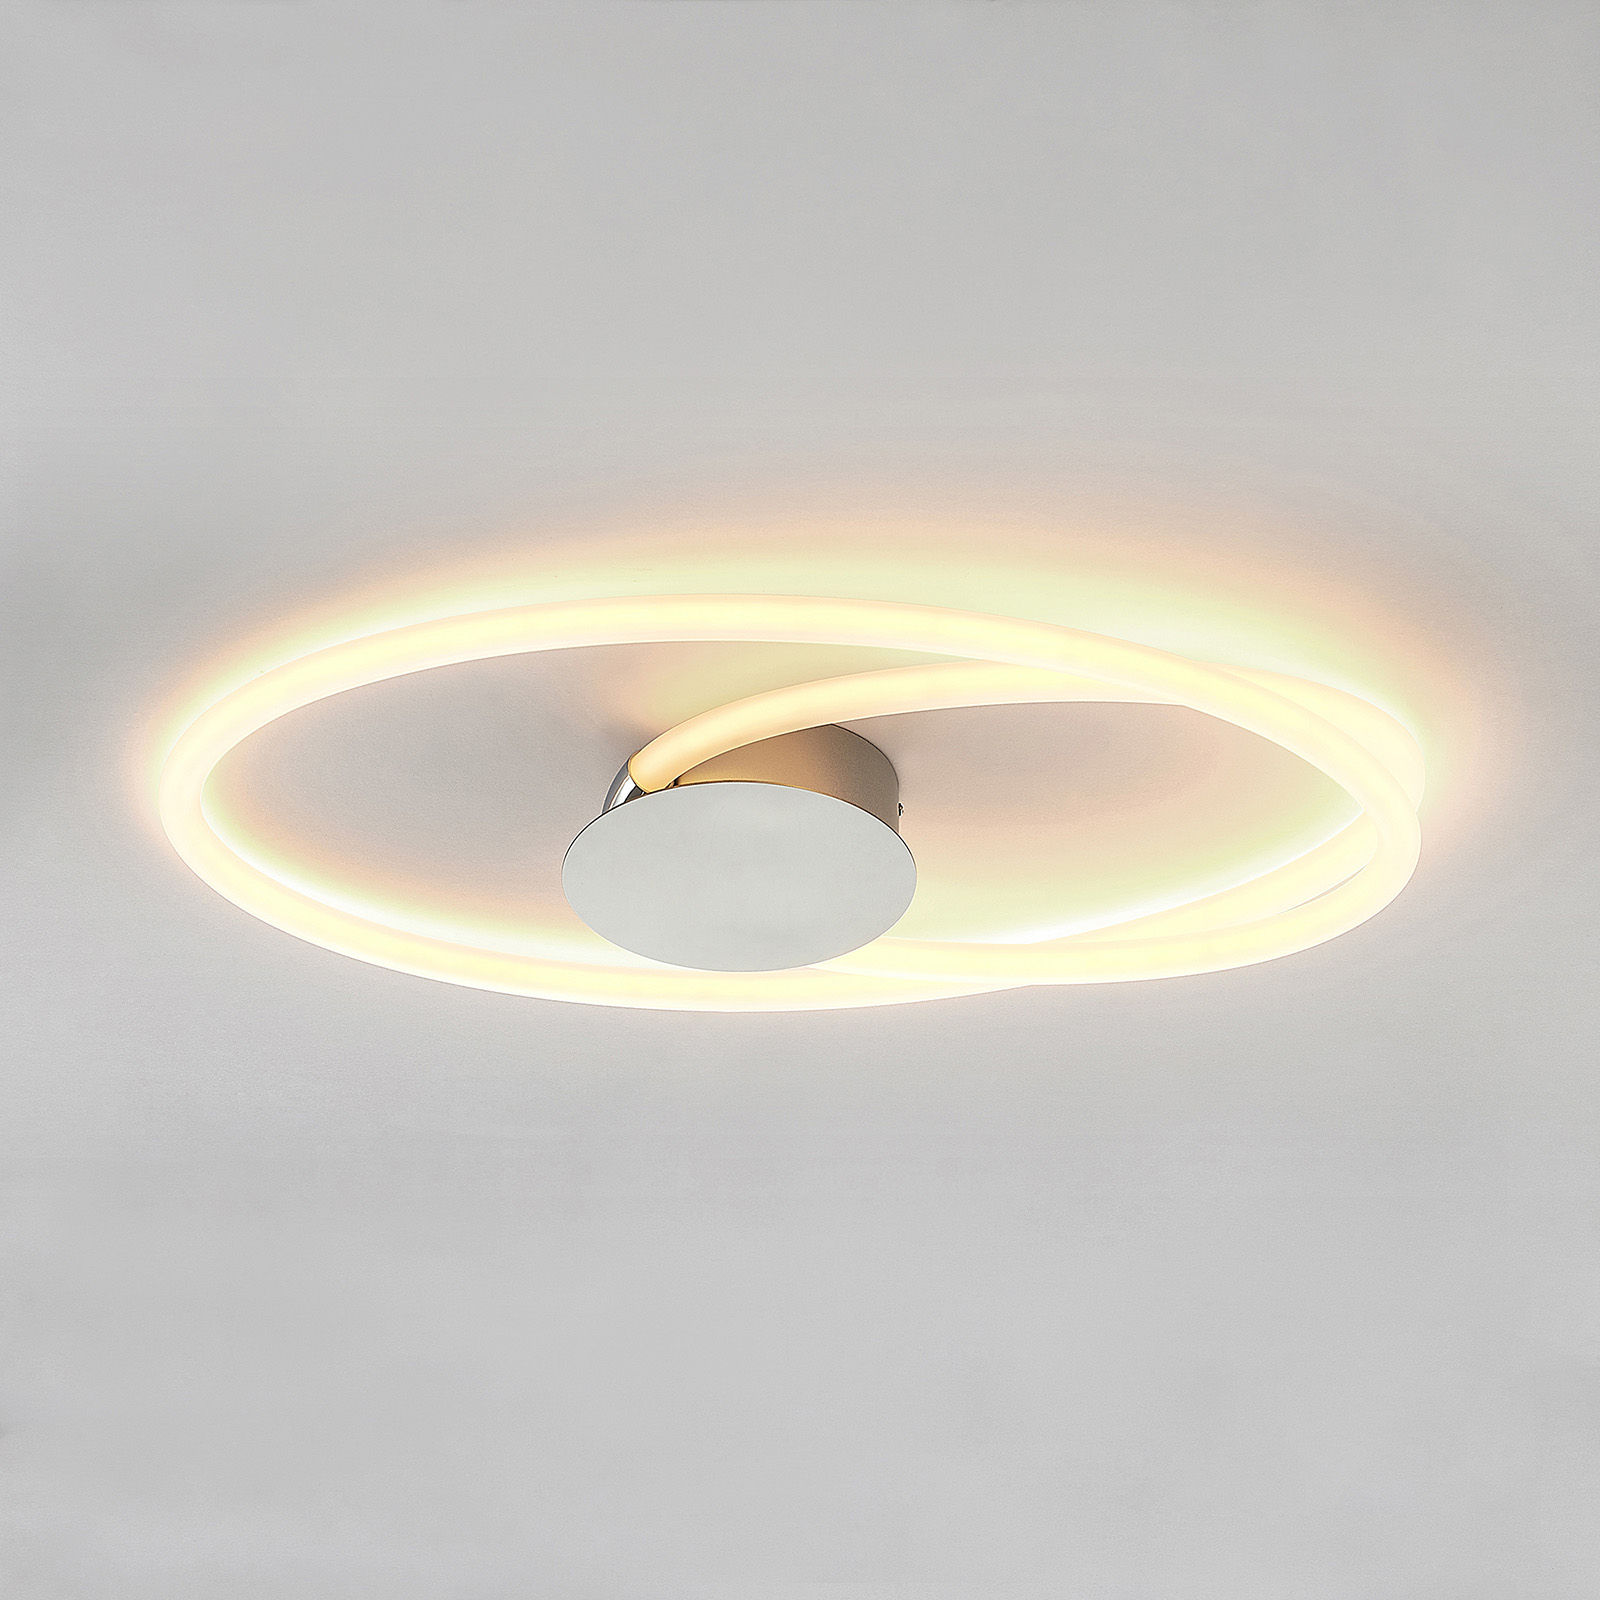 Lucande Ovala LED plafondlamp, 72 cm